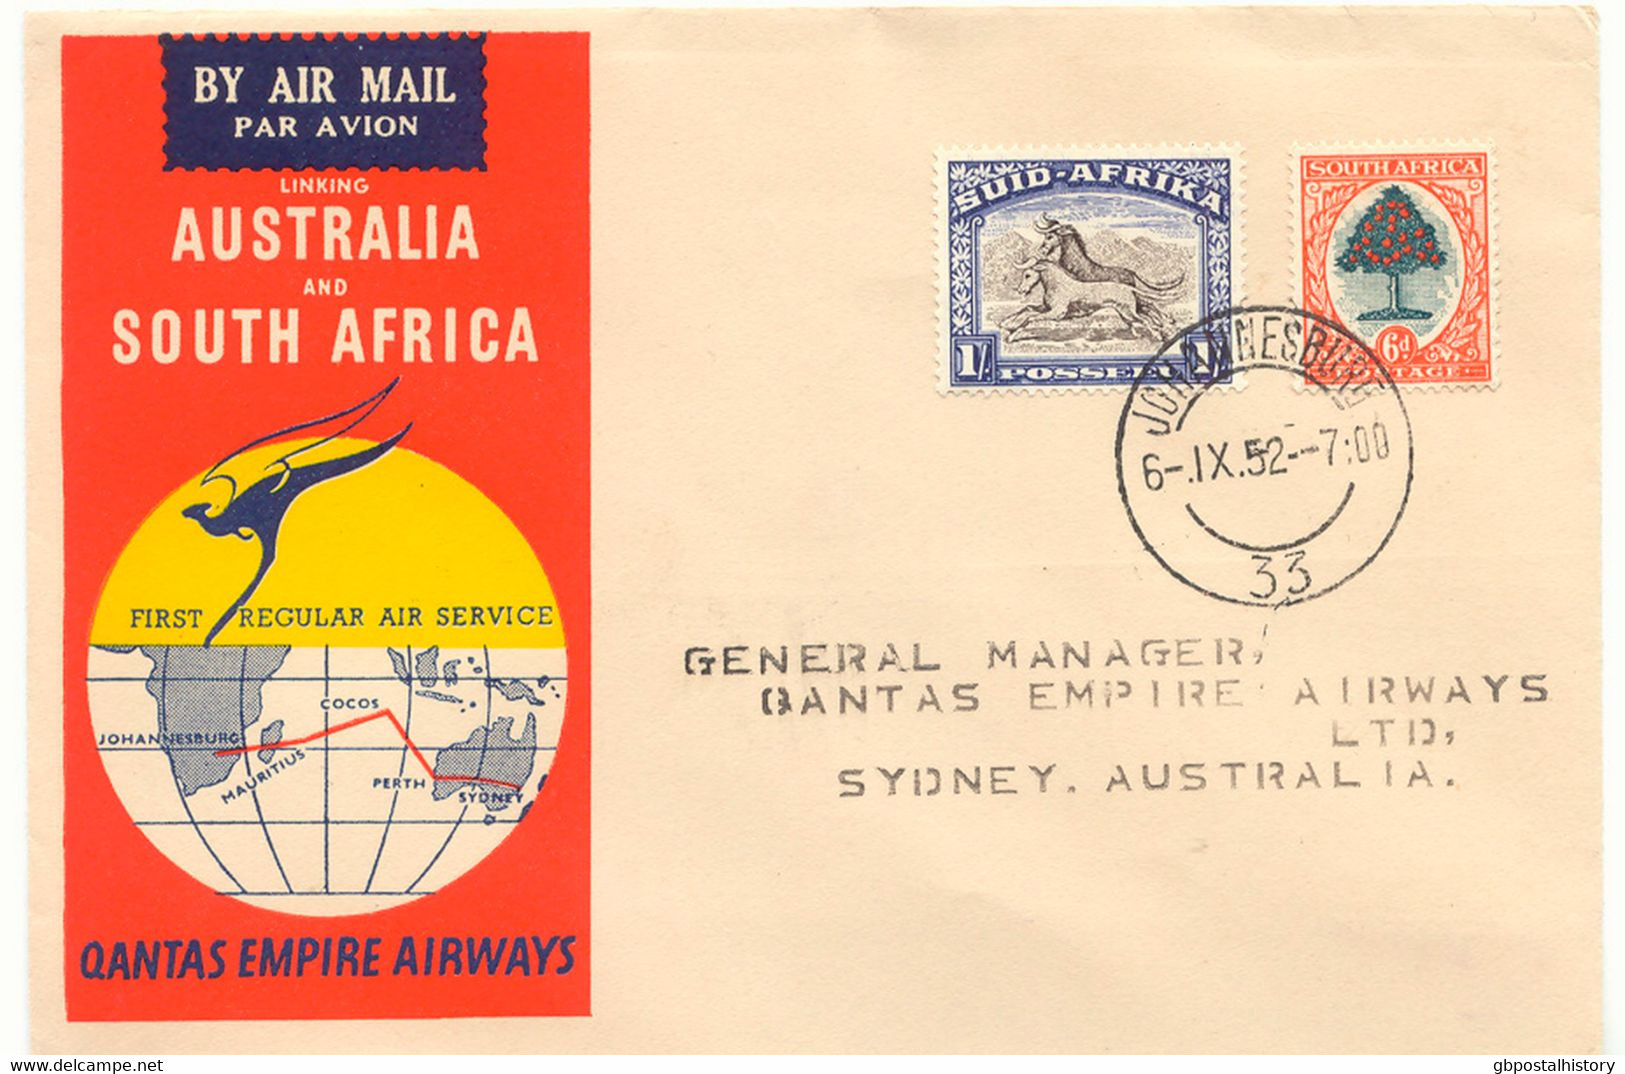 SÜDAFRIKA 1952 Mischfrankatur A. 3 Selt. Kab.-Erstflüge Der Qantas Empire Airways, Teilstrecken "JOHANNESBURG - COCOS IS - Posta Aerea